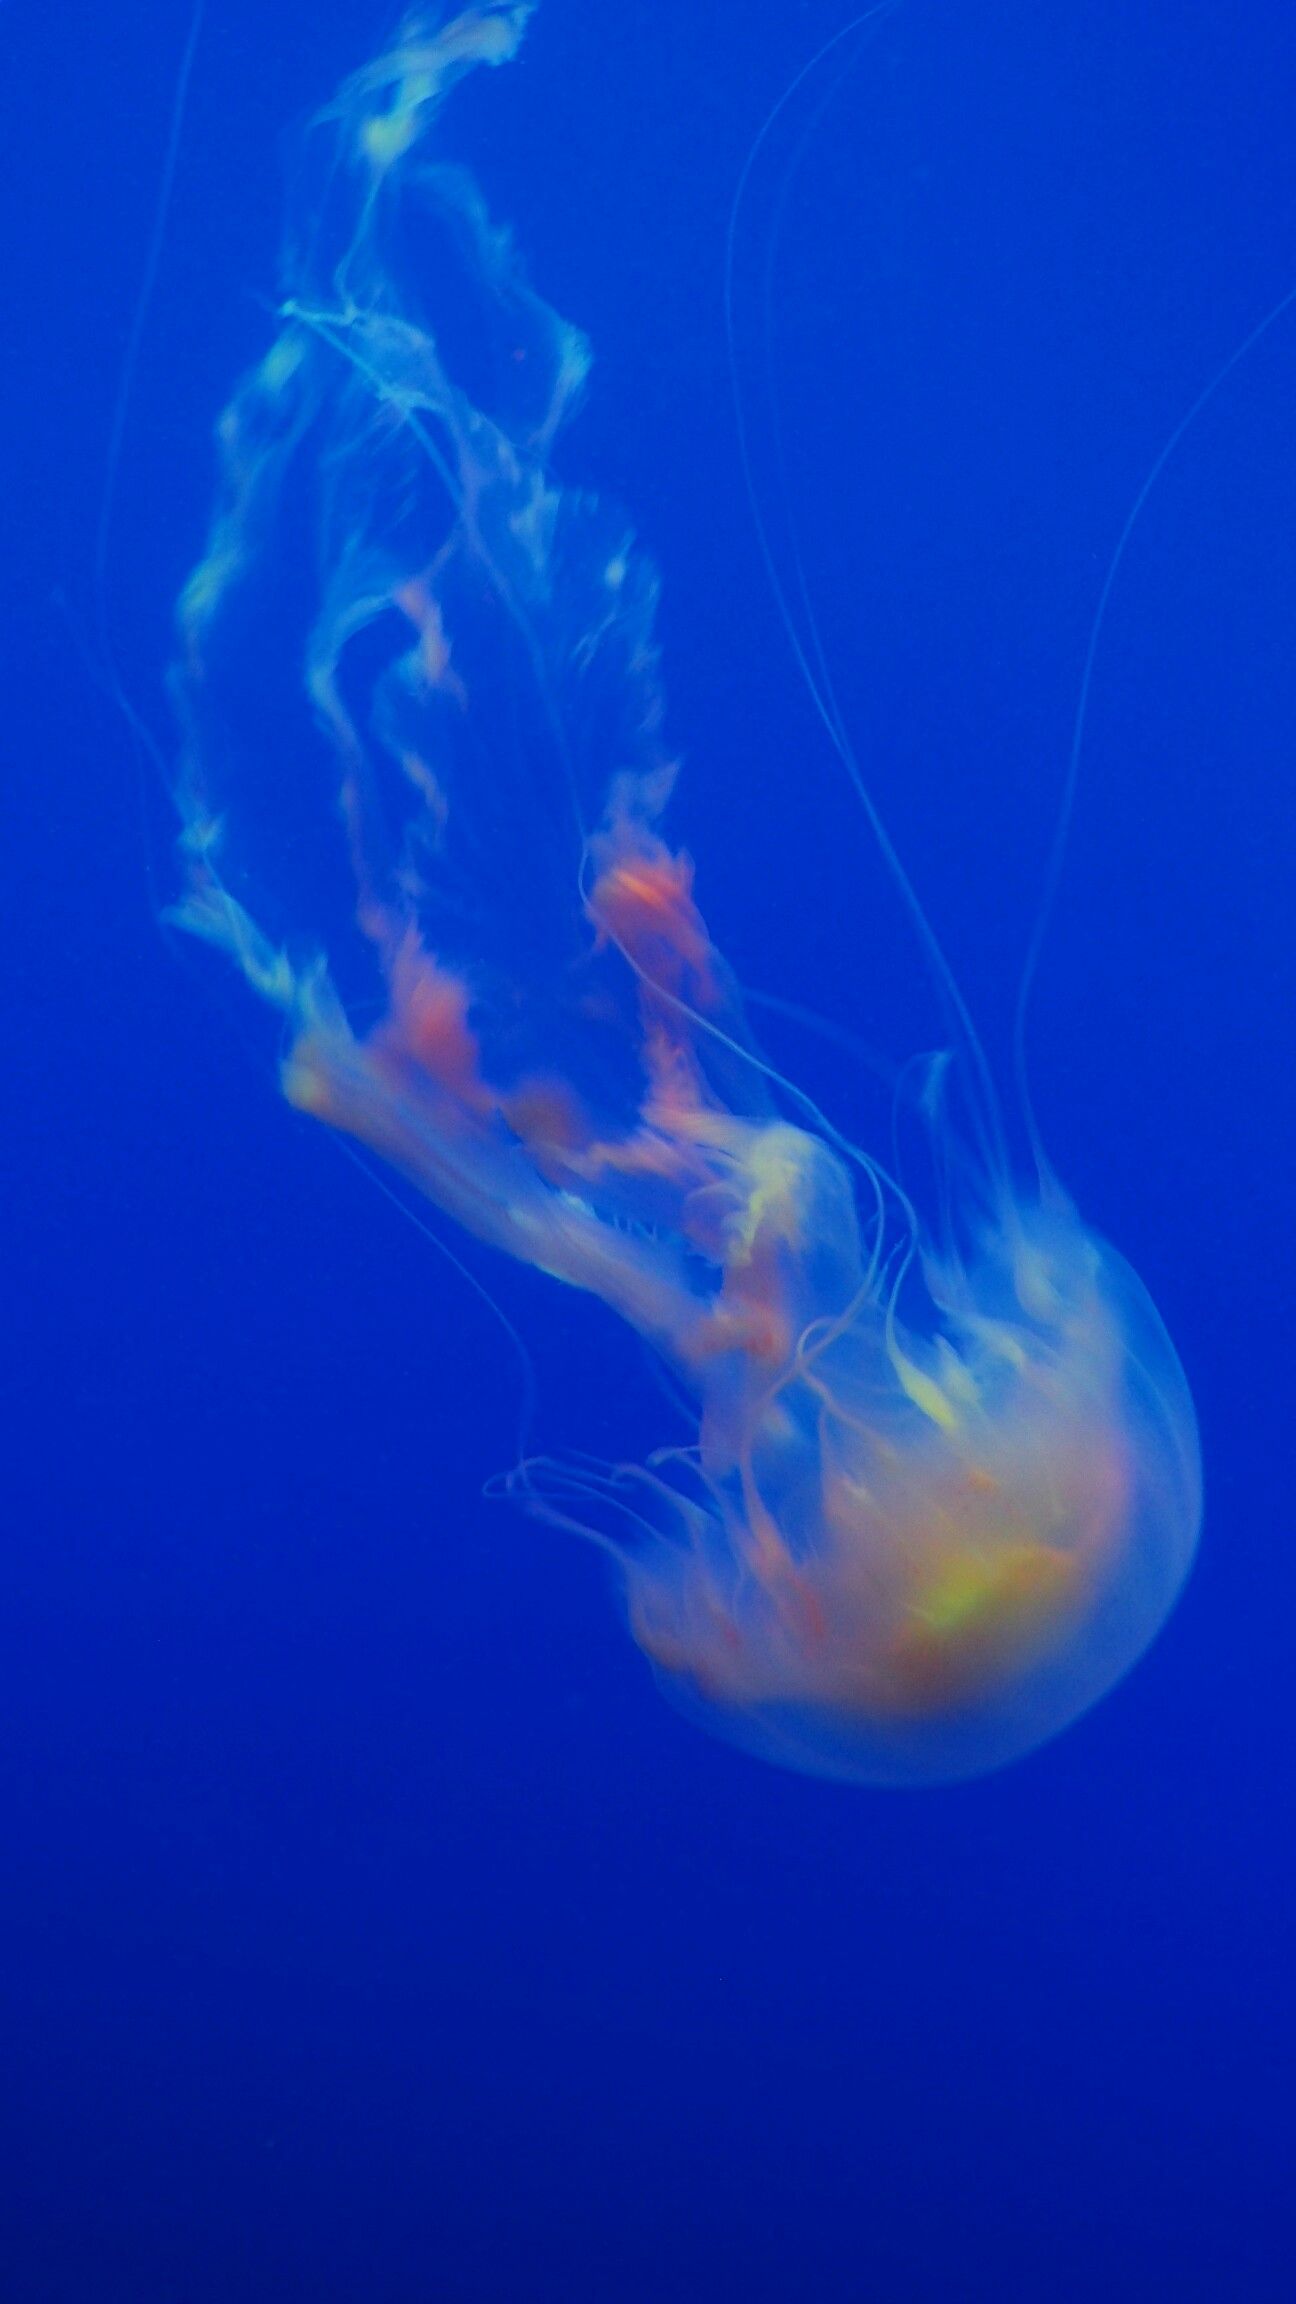 the oven mitt jellyfish Monterey Bay aquarium Spineless, brainless ...